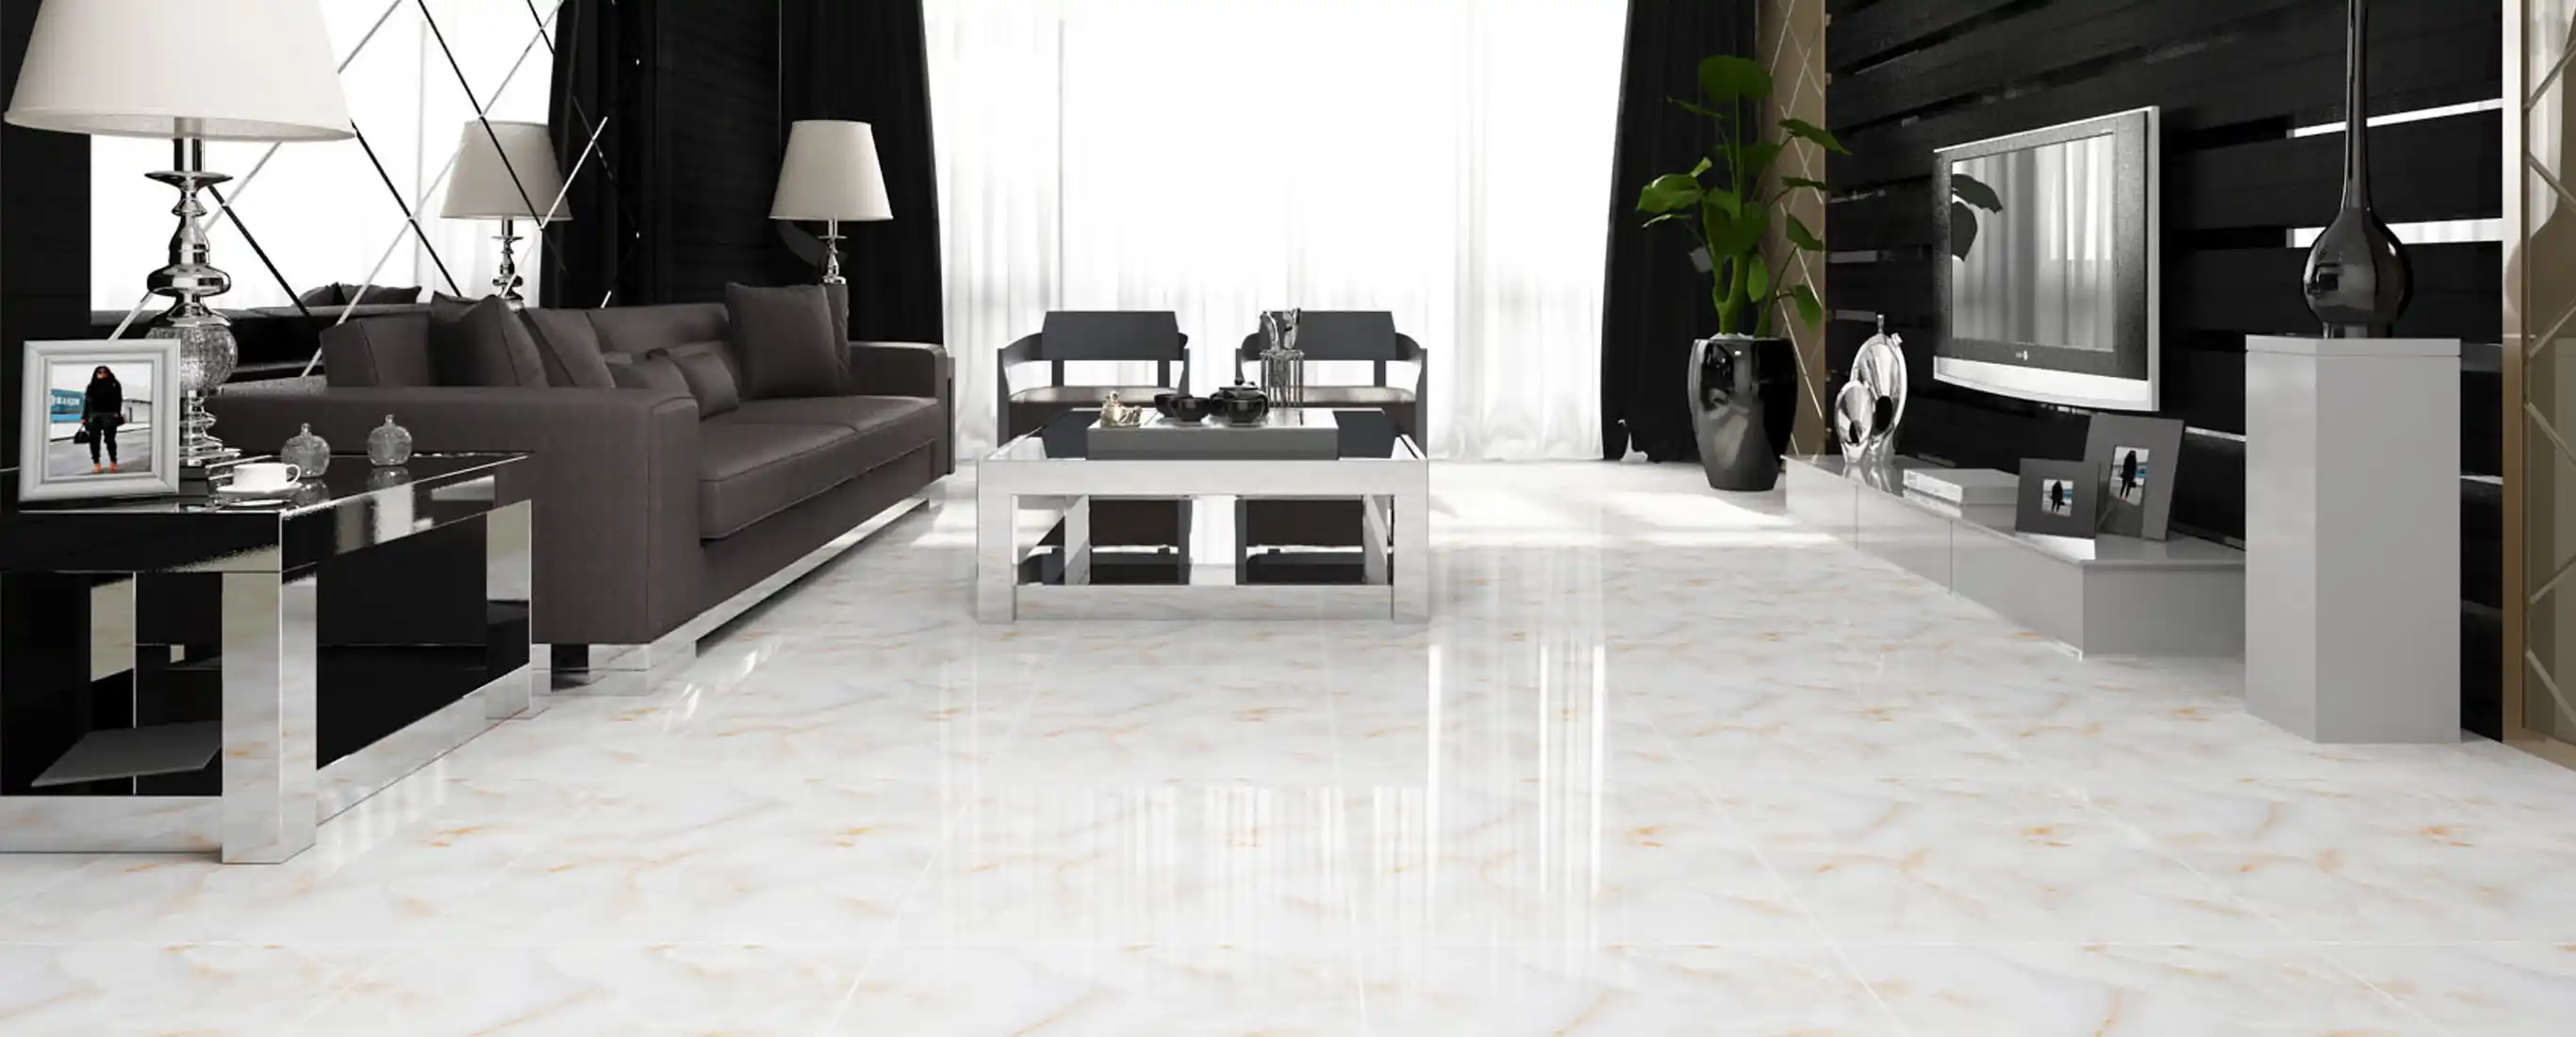 floor tiles design for bedroom